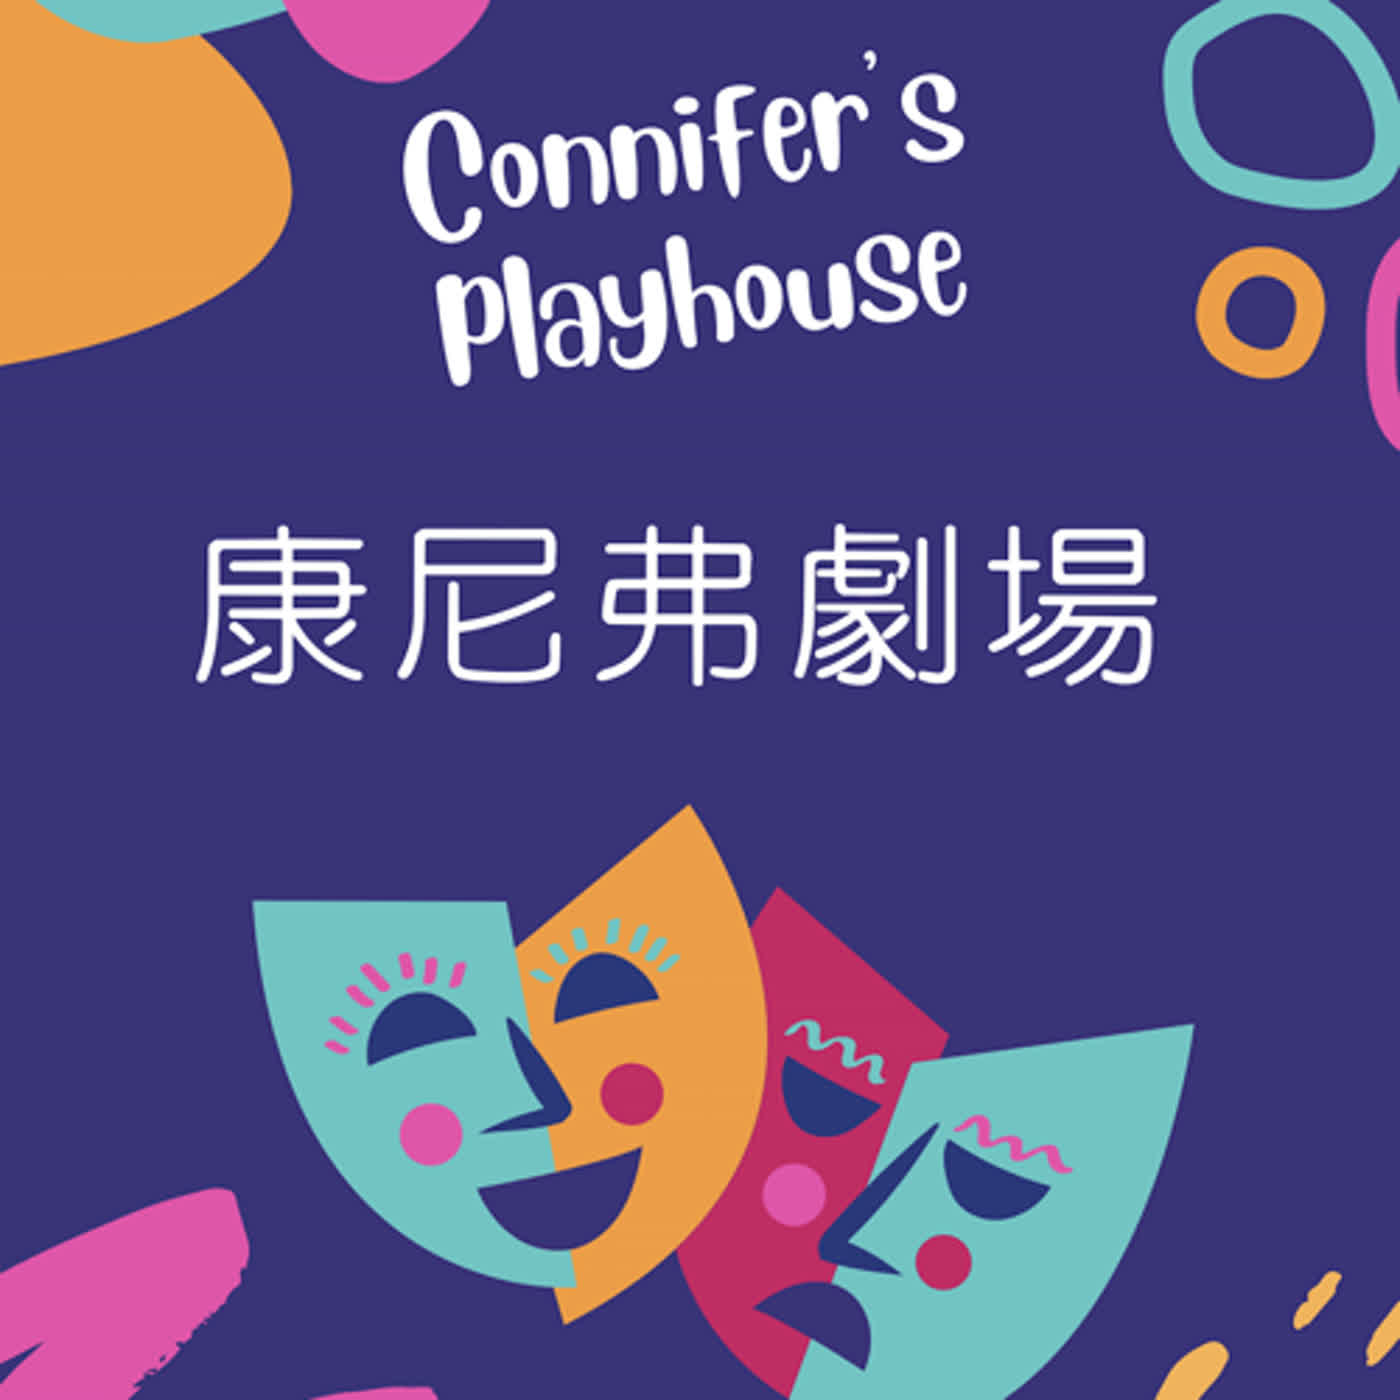 康尼弗劇場 Connifer's playhouse 